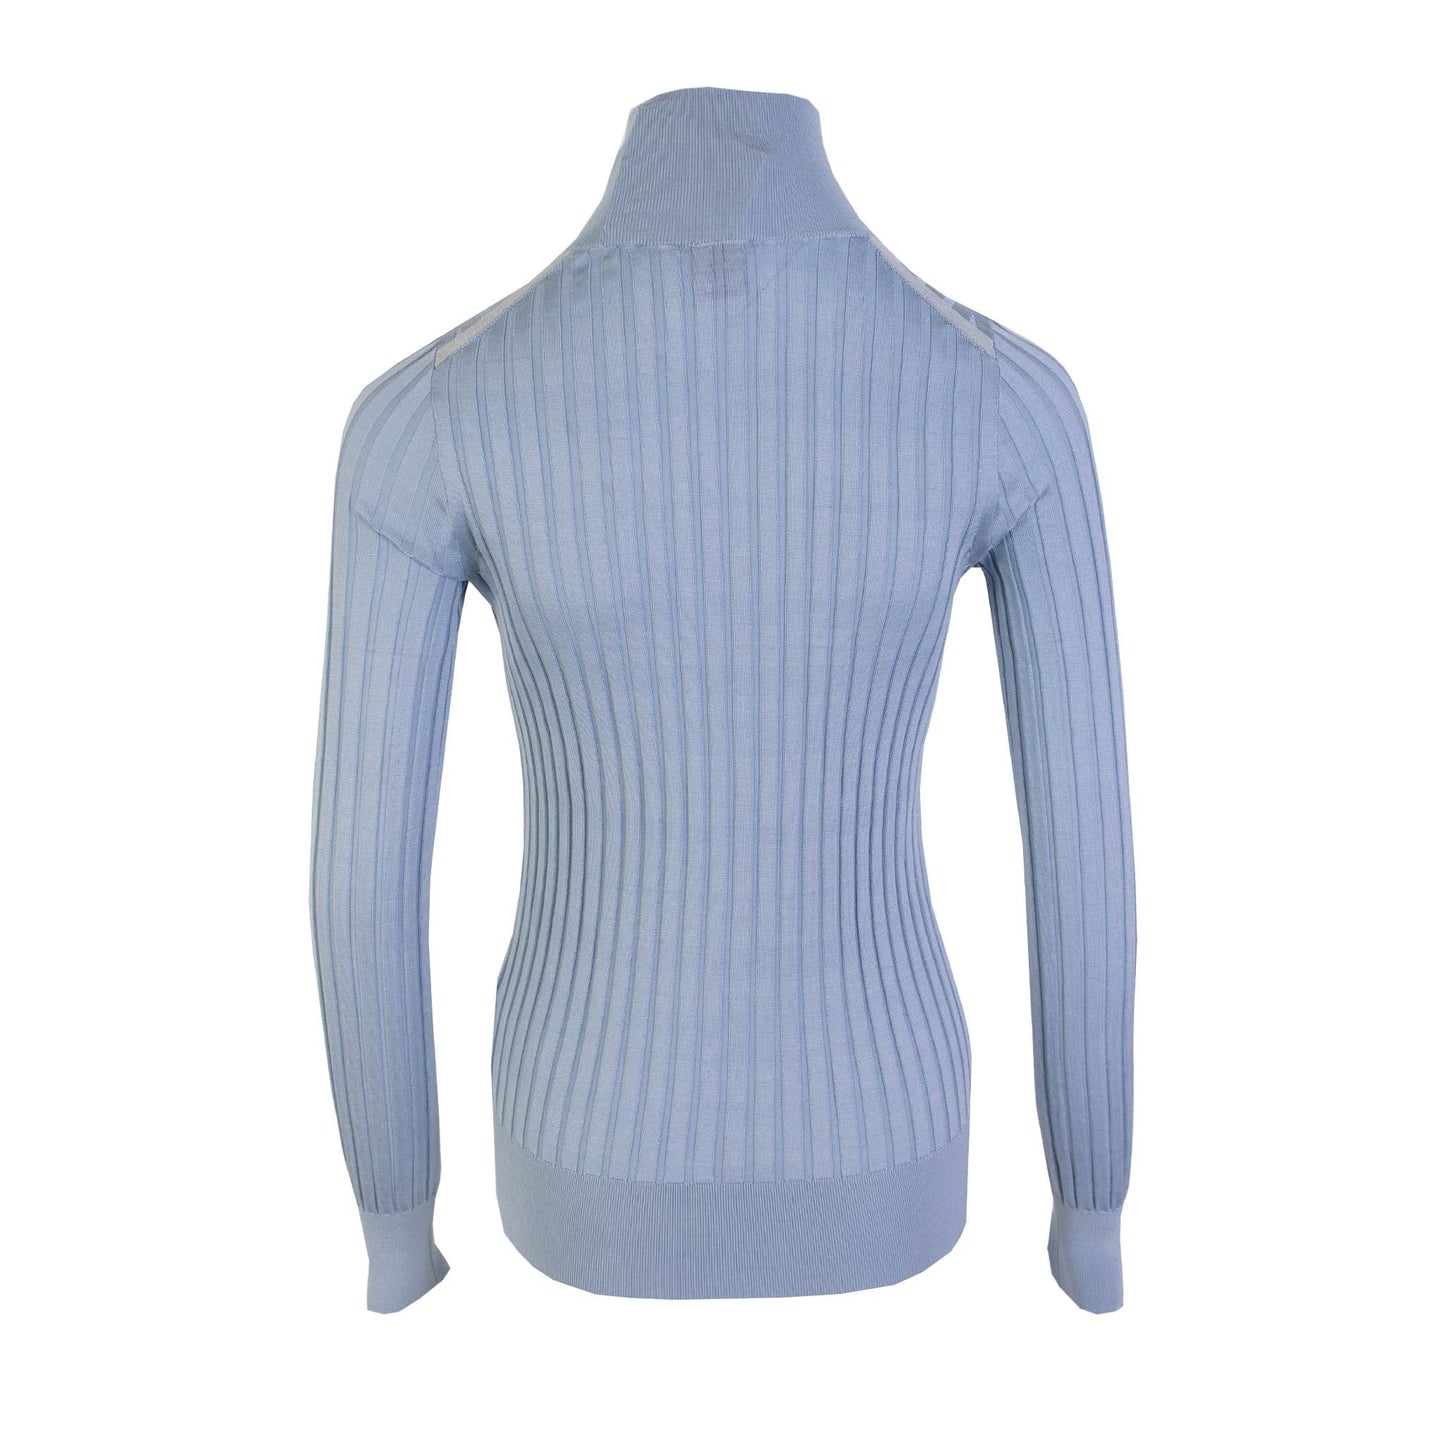 Burberry Silk Light Blue Turtleneck Sweater - DEA STILOSA MILANO